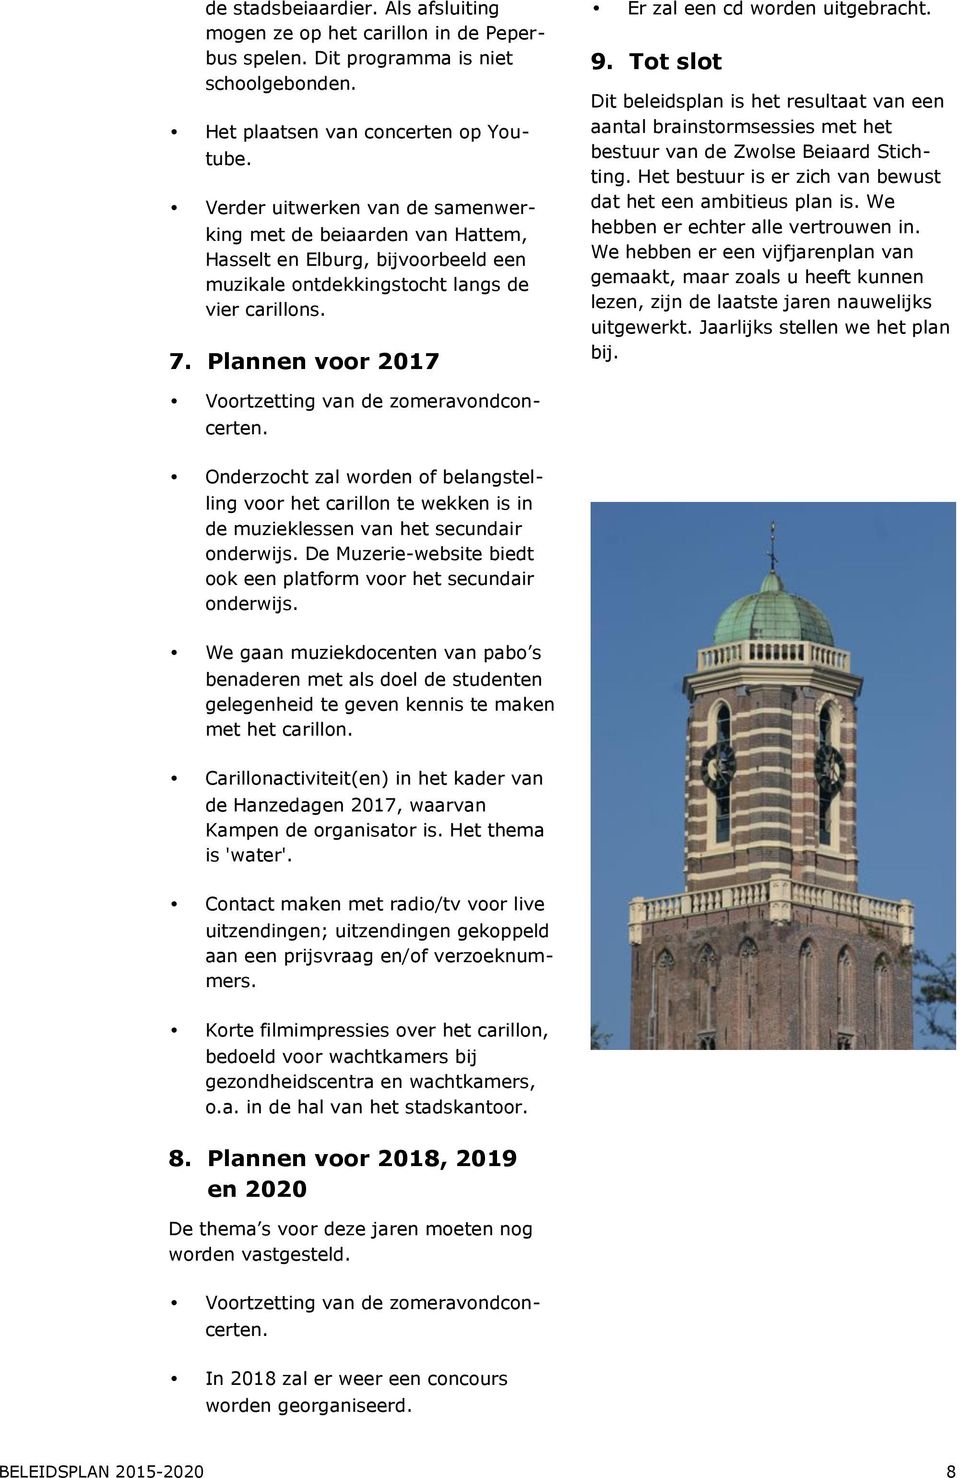 Plannen voor 2017 Er zal een cd worden uitgebracht. 9. Tot slot Dit beleidsplan is het resultaat van een aantal brainstormsessies met het bestuur van de Zwolse Beiaard Stichting.